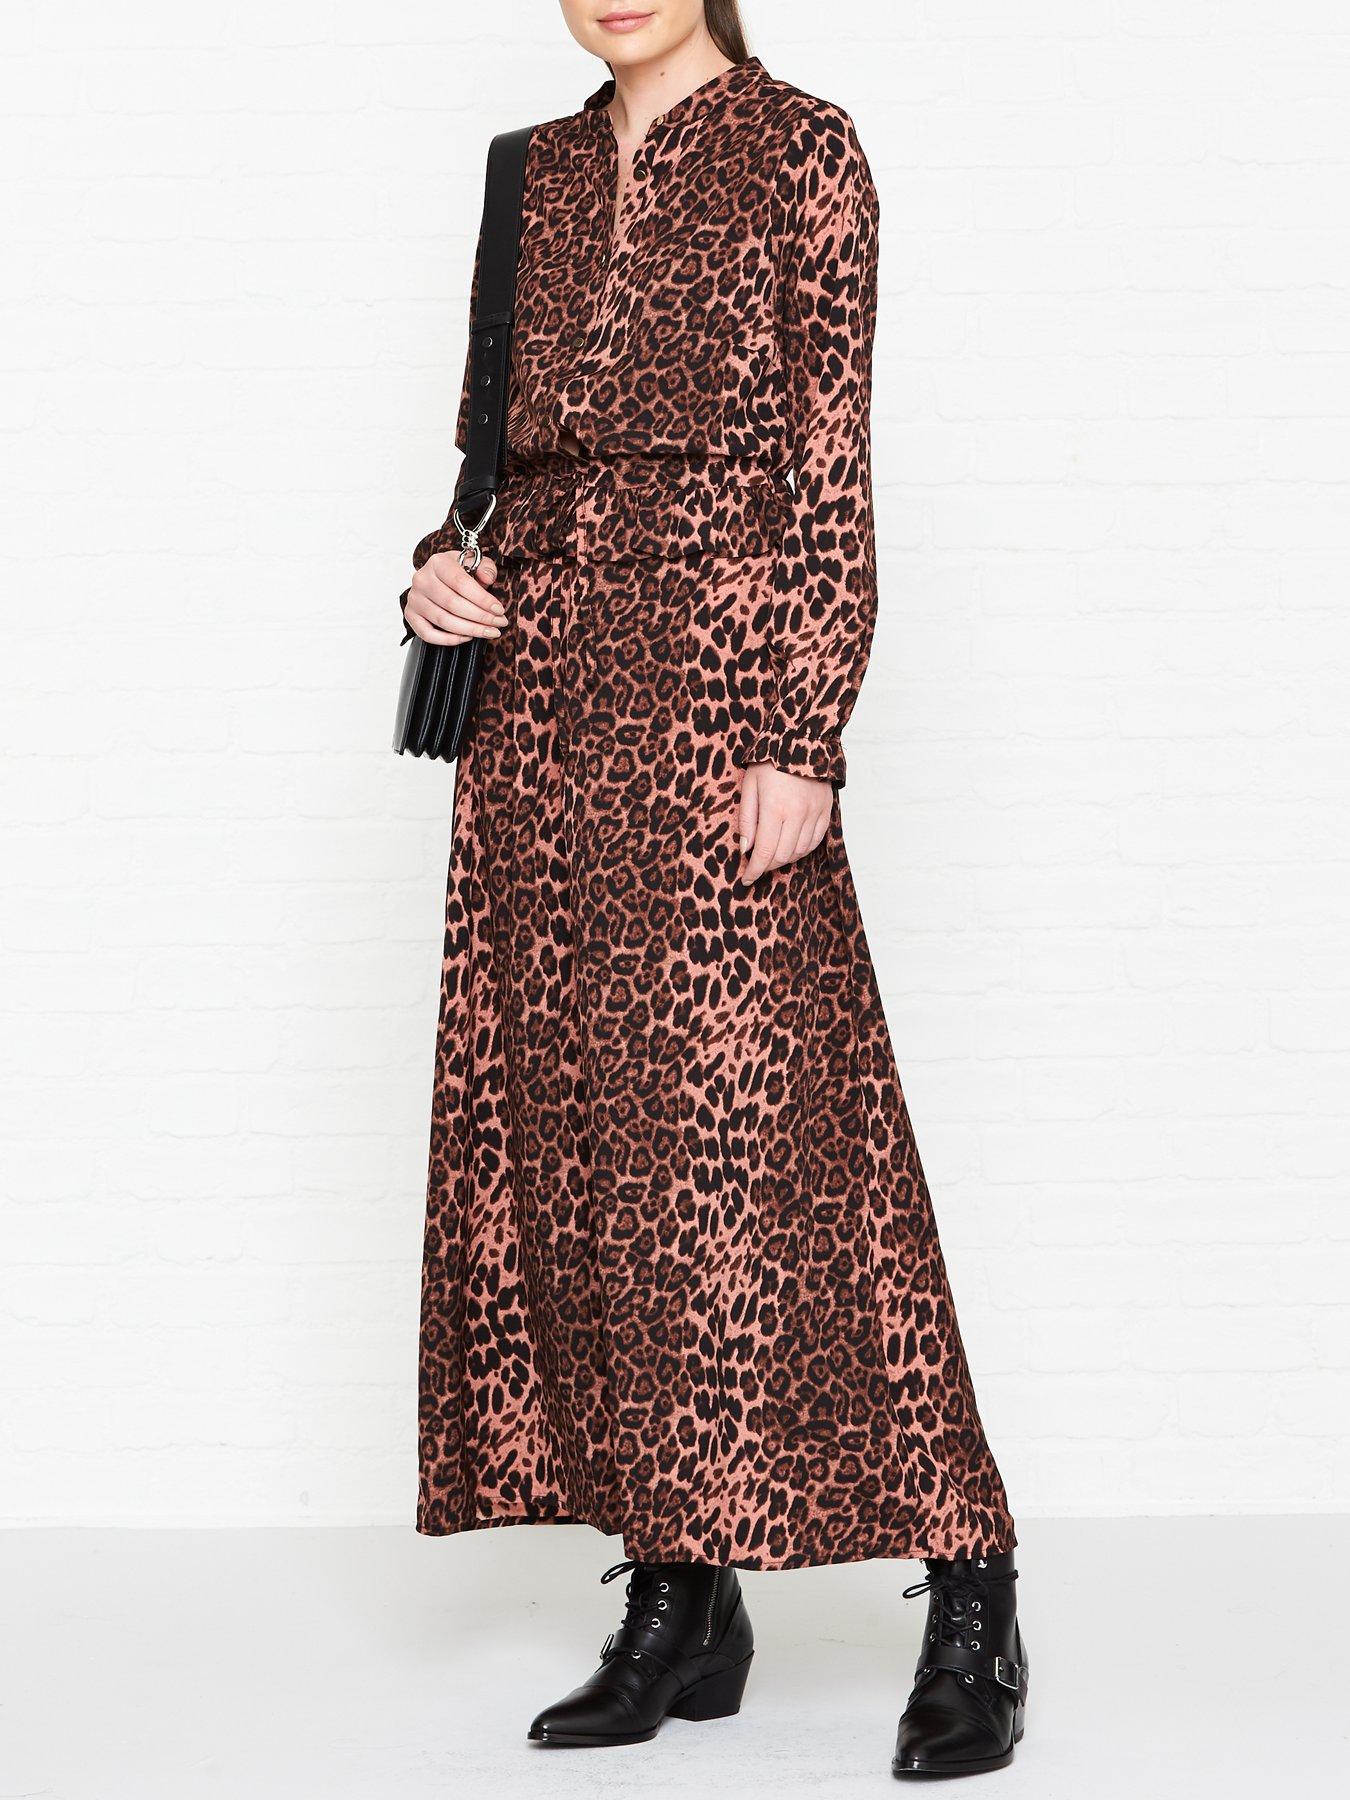 leopard print clothes uk